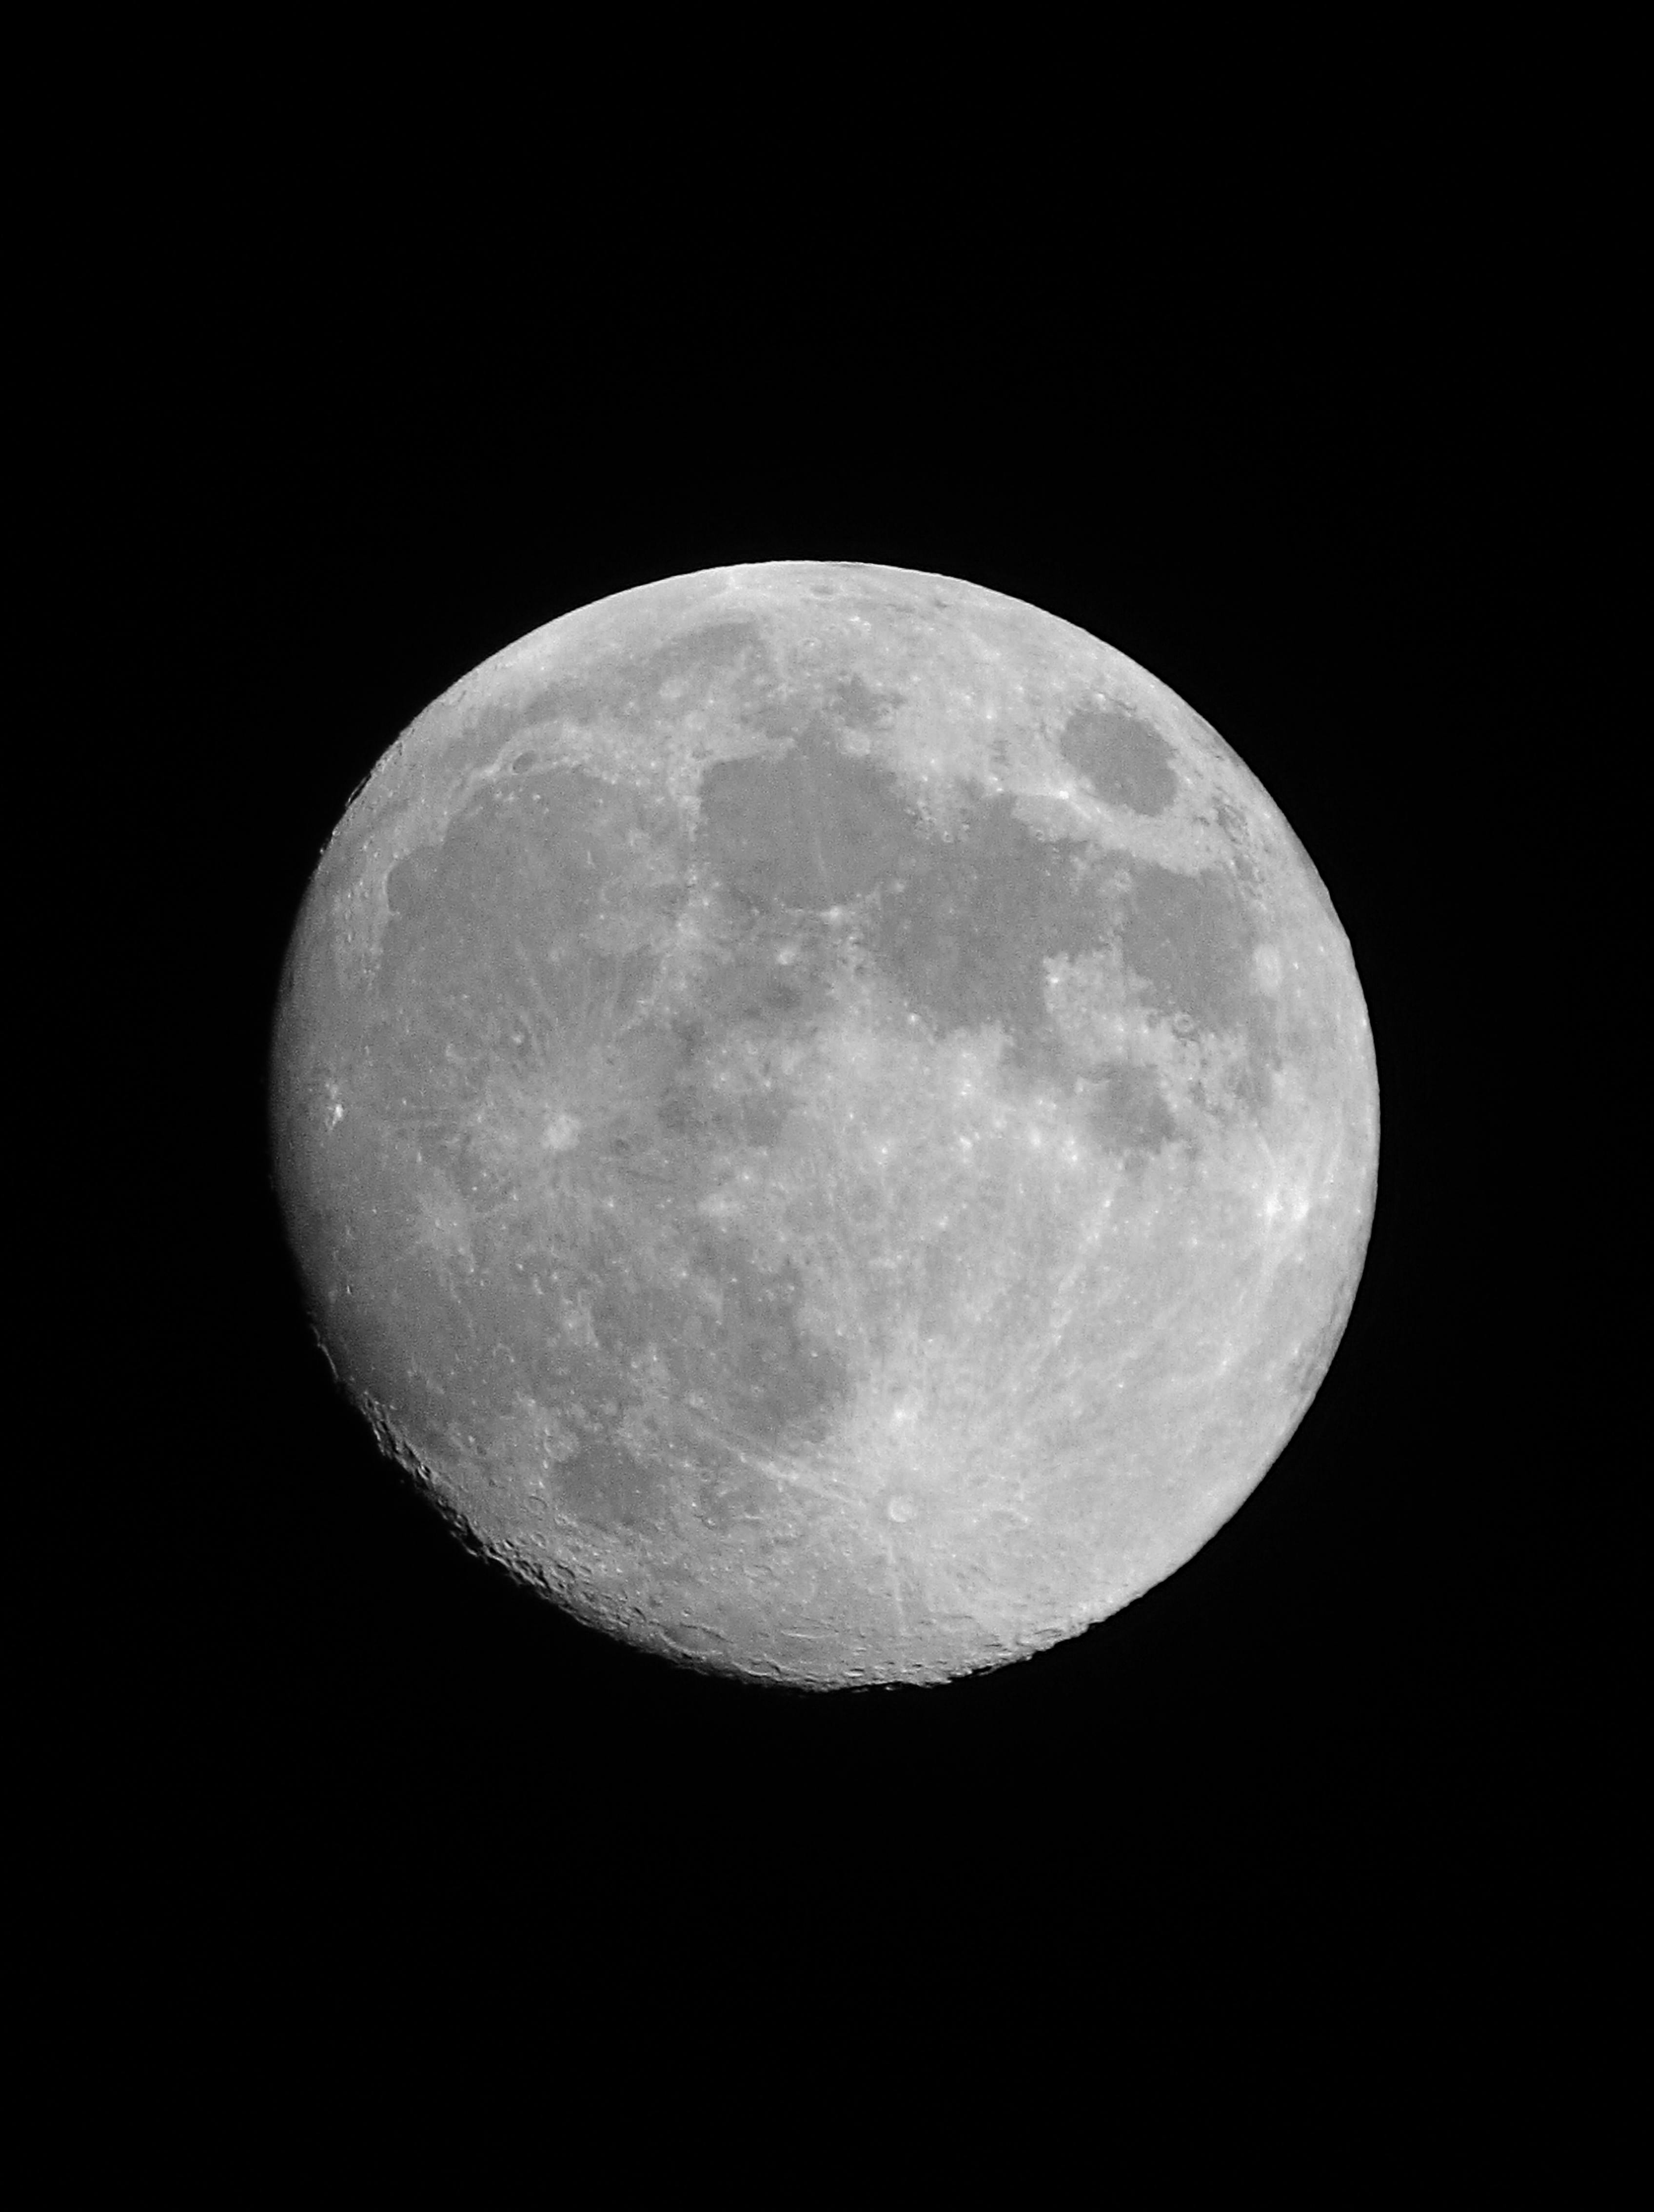 Mặt trăng đen nền đen: Bạn đã bao giờ tò mò về những khoảnh khắc đen tối của mặt trăng chưa? Hãy xem ngay hình ảnh mặt trăng trên nền đen đầy ấn tượng này để khám phá điều đó nhé!